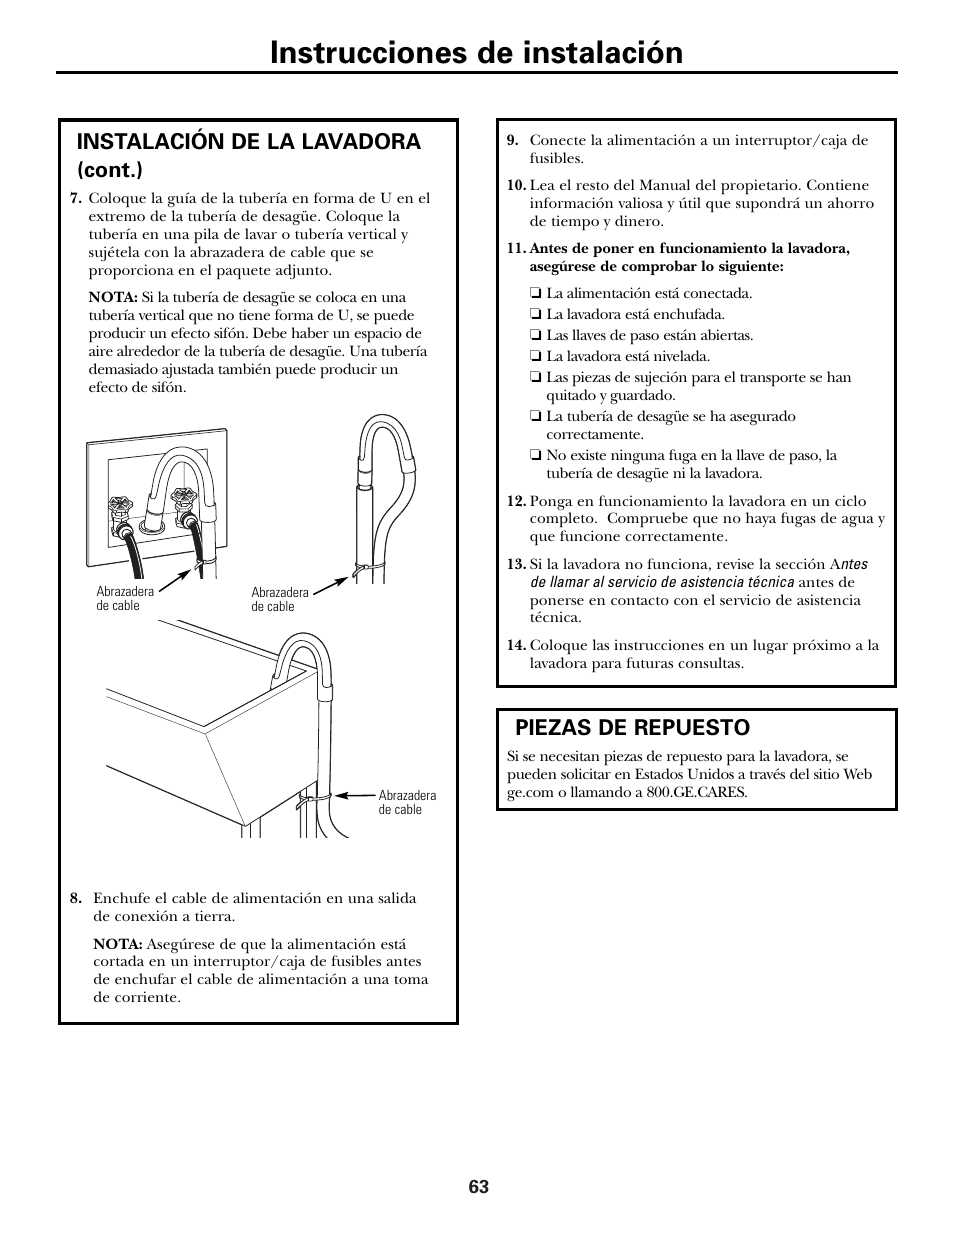 Piezas de repuesto, Instrucciones de instalación, Instalación de la lavadora  (cont.) | GE GBVH6260 User Manual | Page 63 / 72 | Original mode